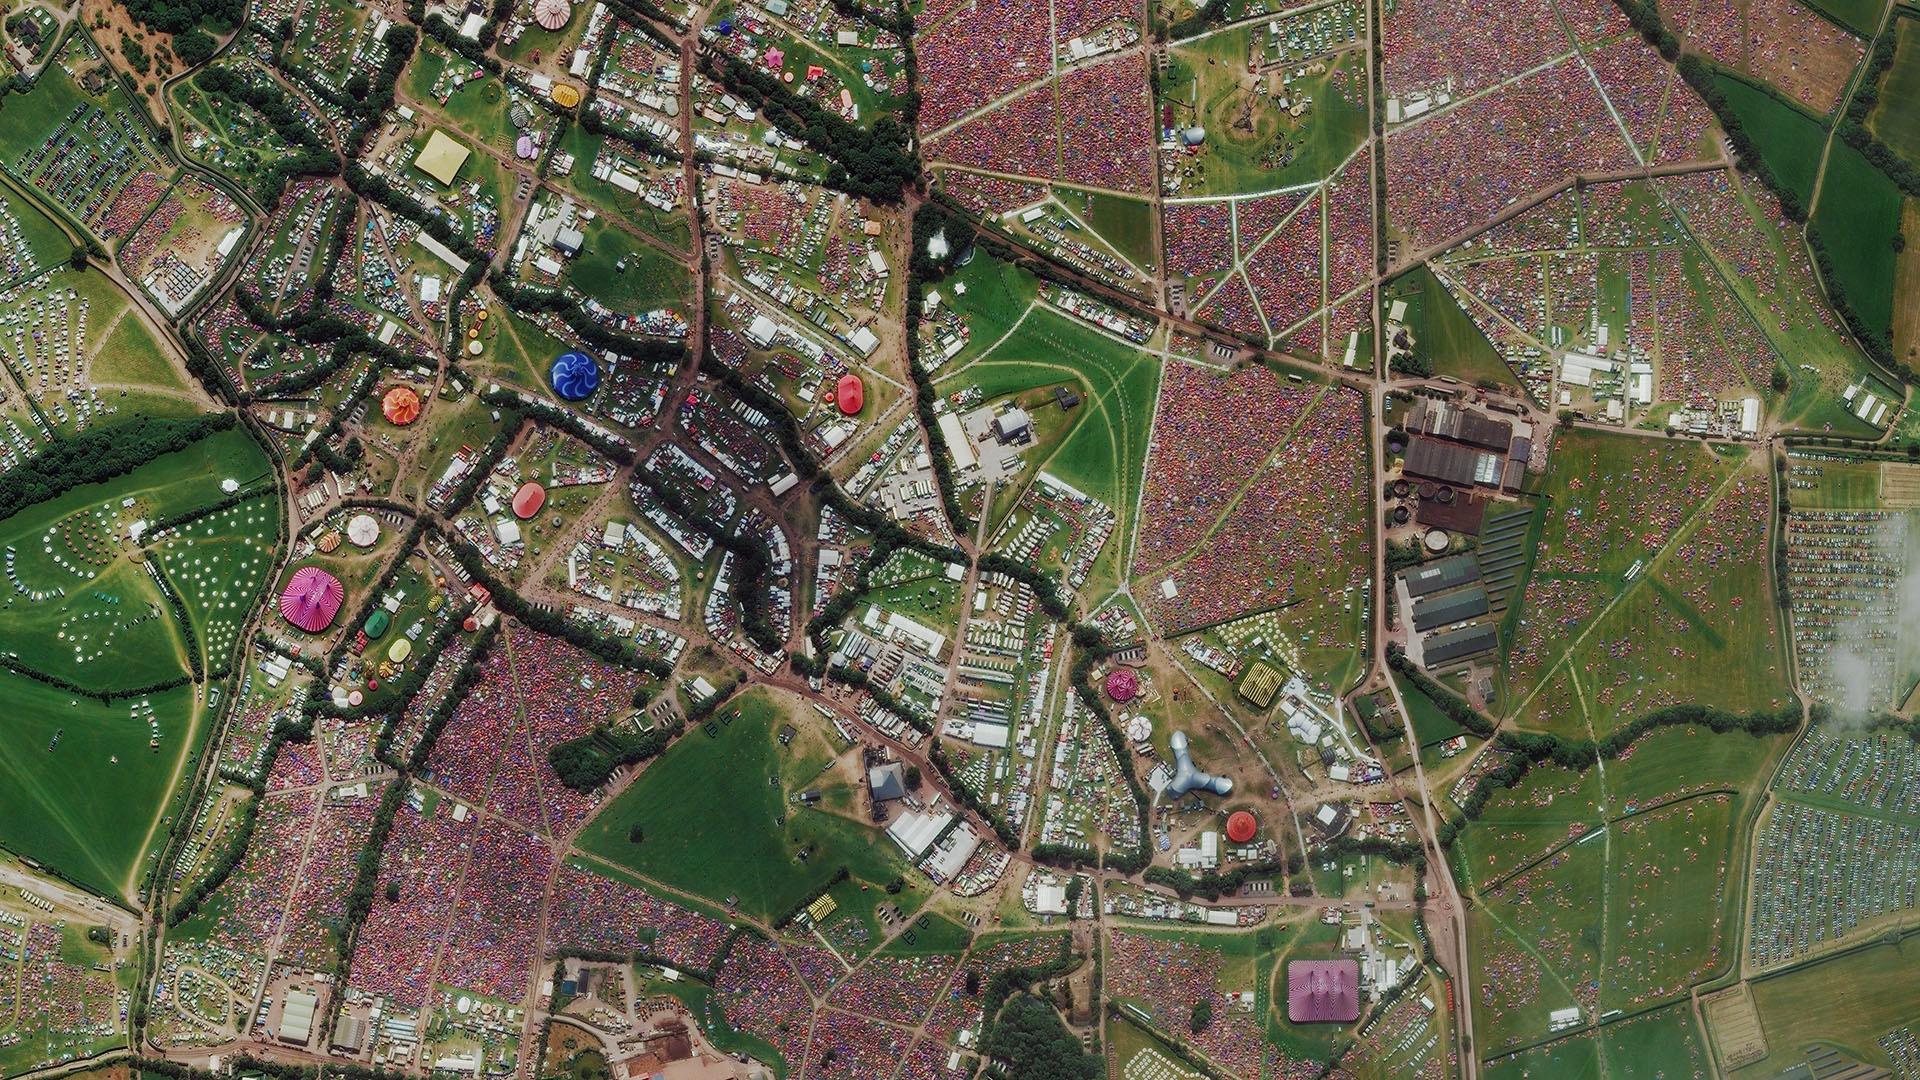 Aerial image of 175,000 people in Glastonbury.